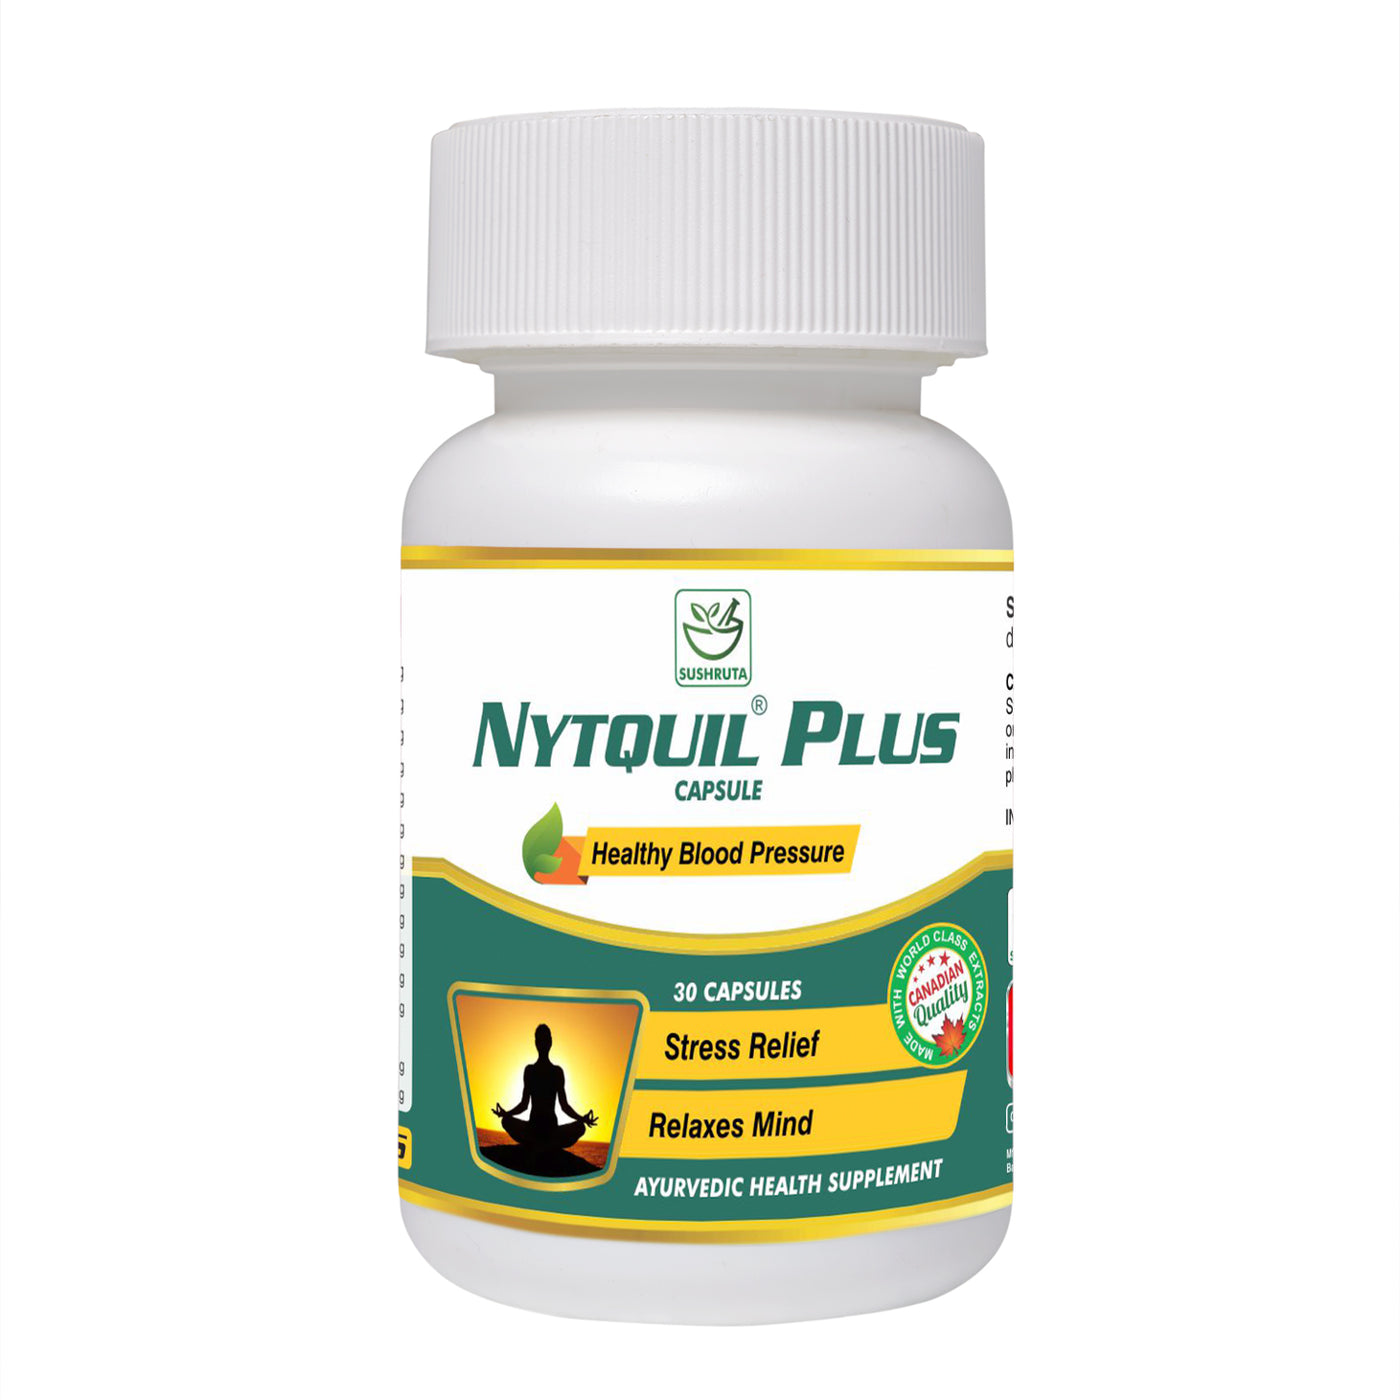 Nytquil Plus Capsule - Natural Sleep - Sushruta Clinic